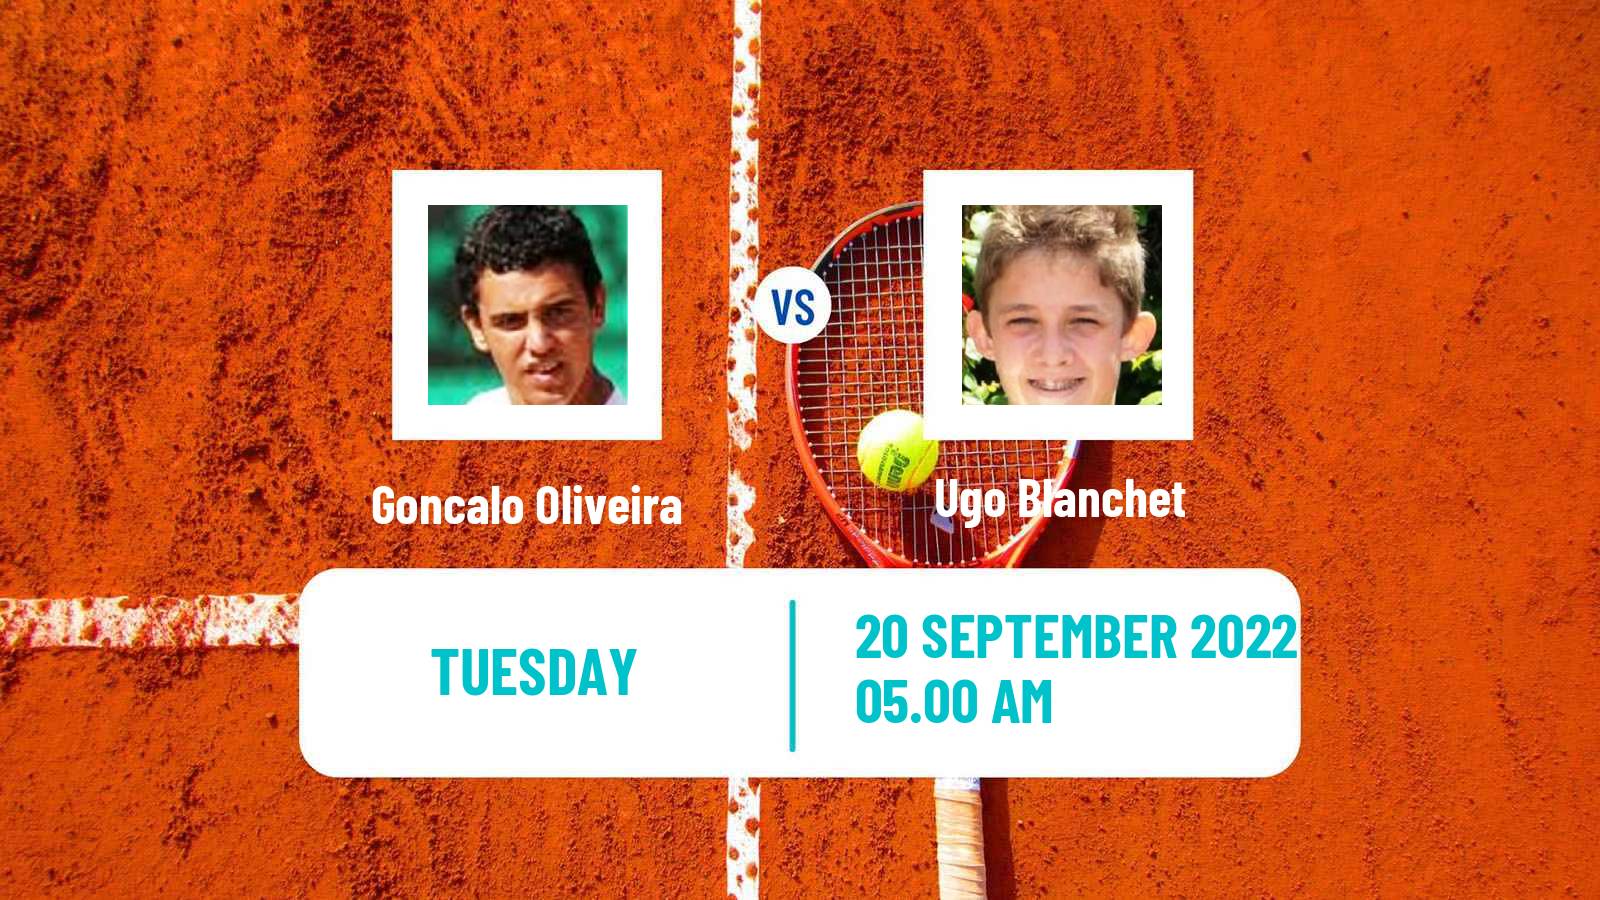 Tennis ATP Challenger Goncalo Oliveira - Ugo Blanchet